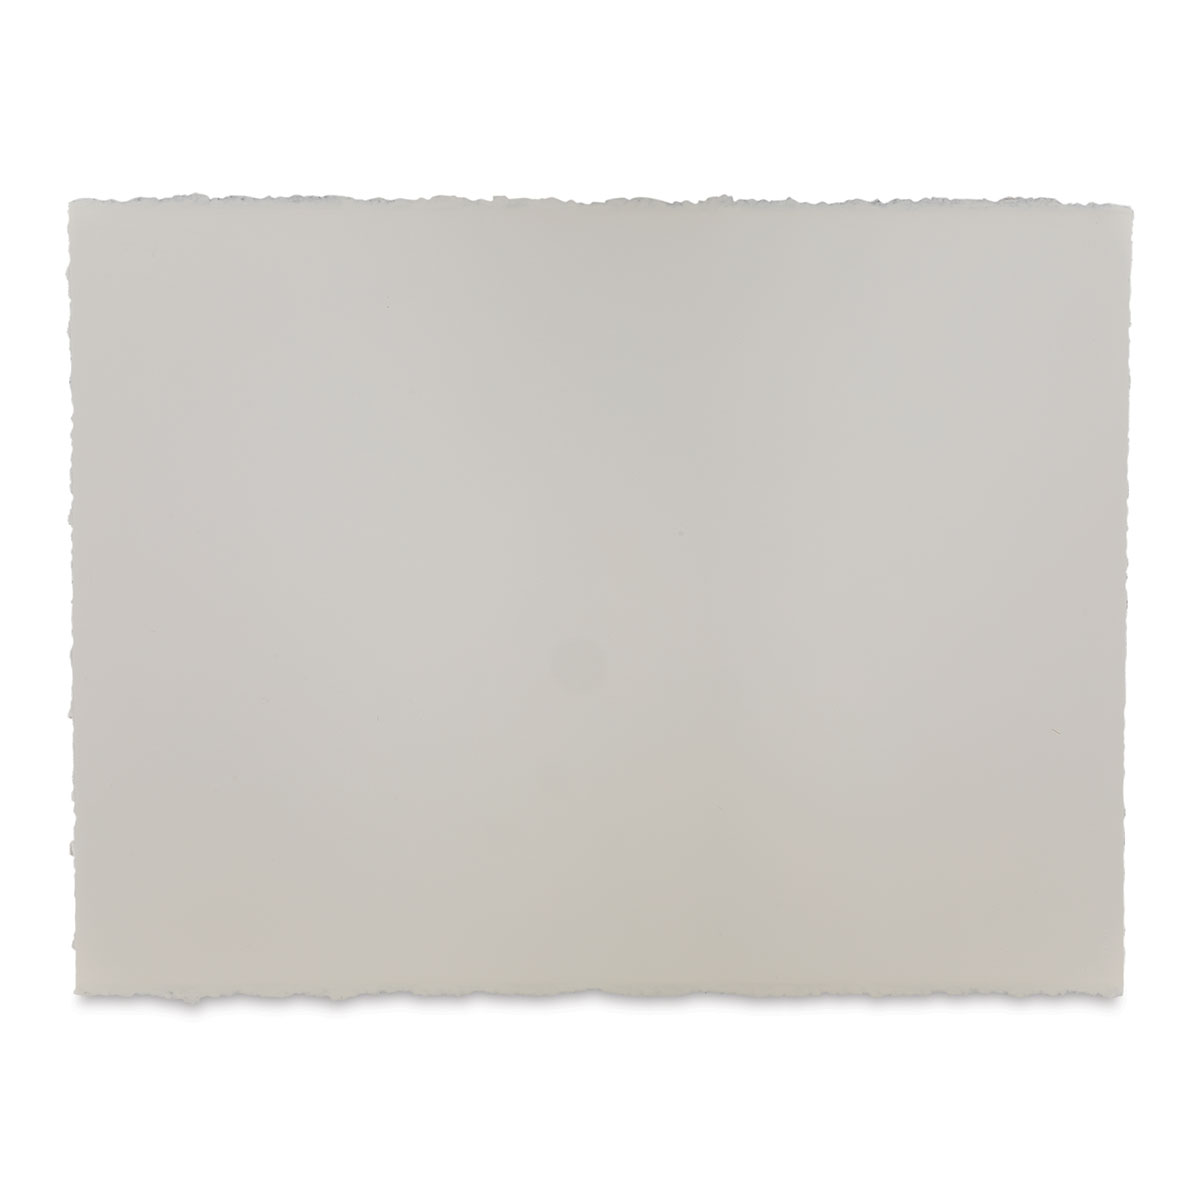 Arches 140lbs Hot Press Watercolor Paper 22 x 30 10pk - Bright White